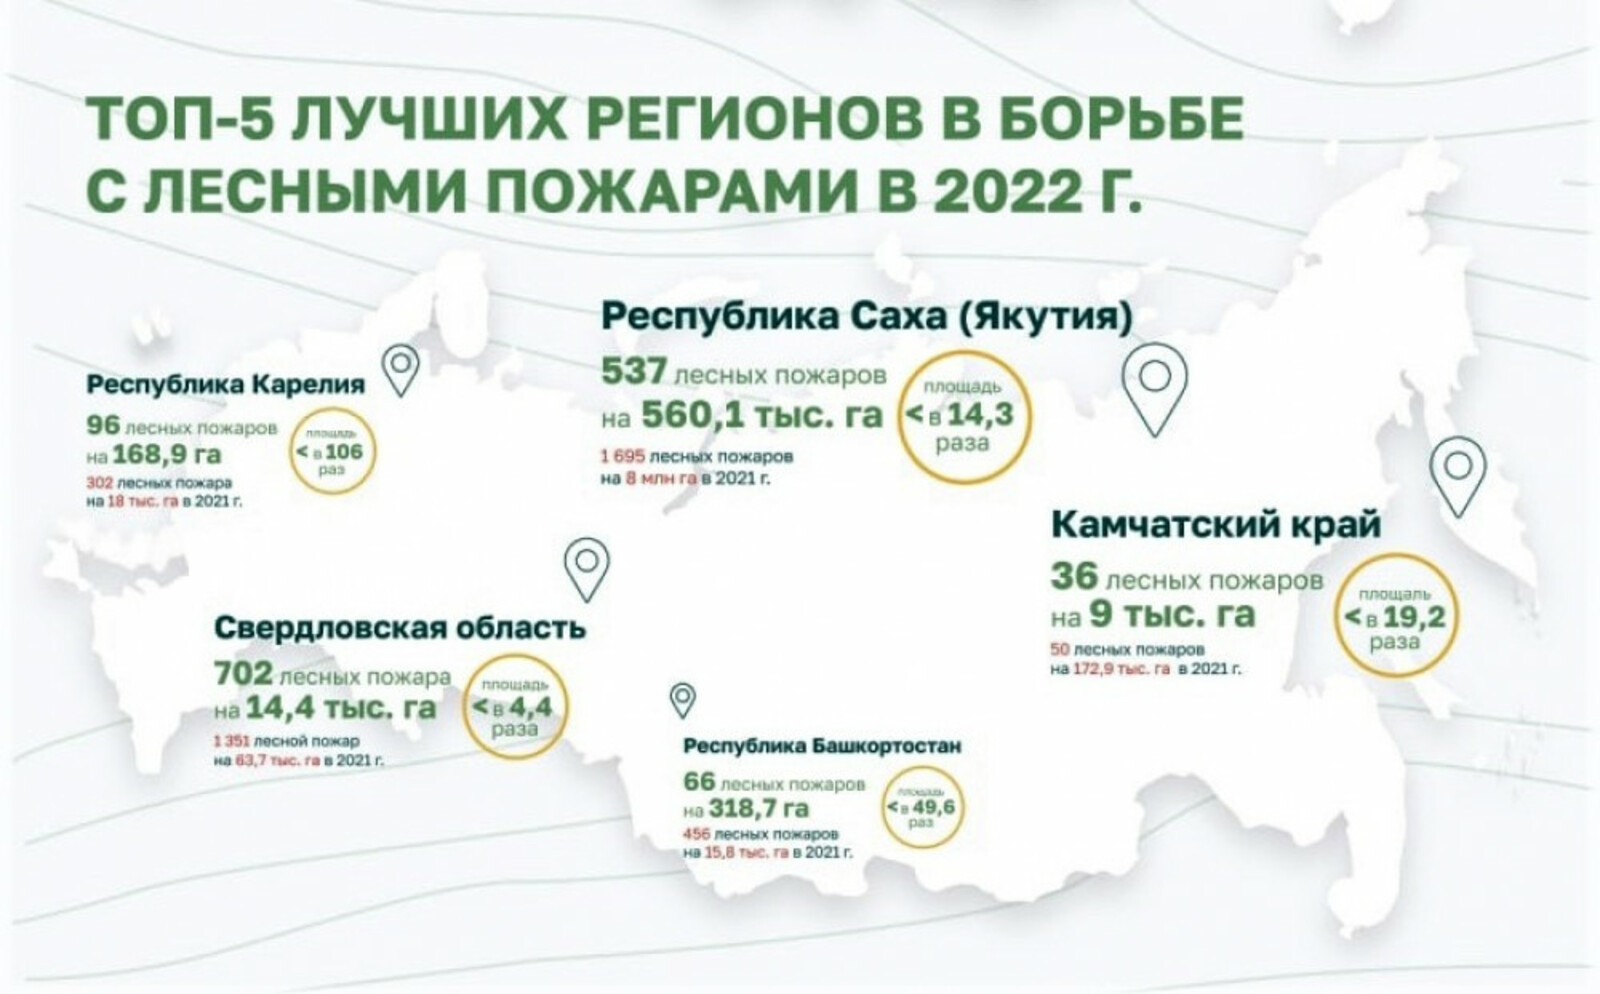 Башкирия вошла в ТОП-5 лучших регионов России по борьбе с лесными пожарами в 2022 году